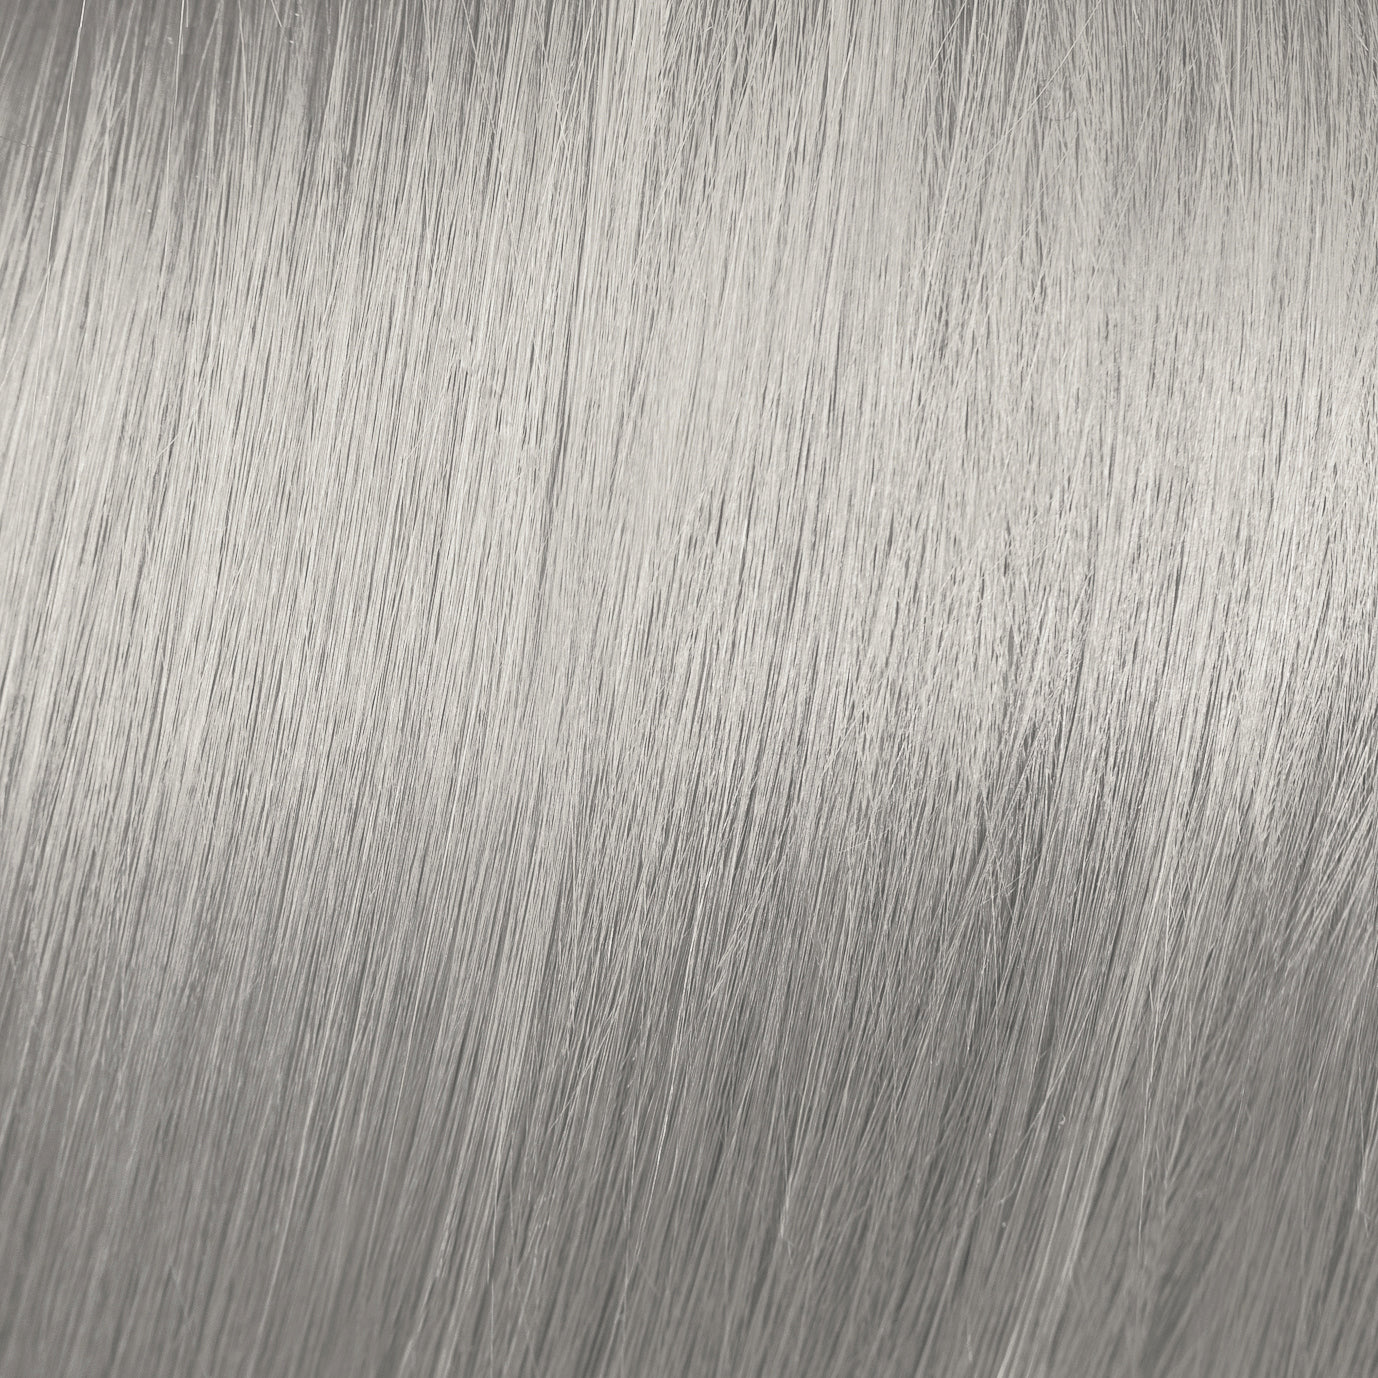 Tinte de pelo en crema de elgon profesional, Tinte gris 10/112 Coloración ÁGATA GRIS OSCURO | Para Pelo blanco